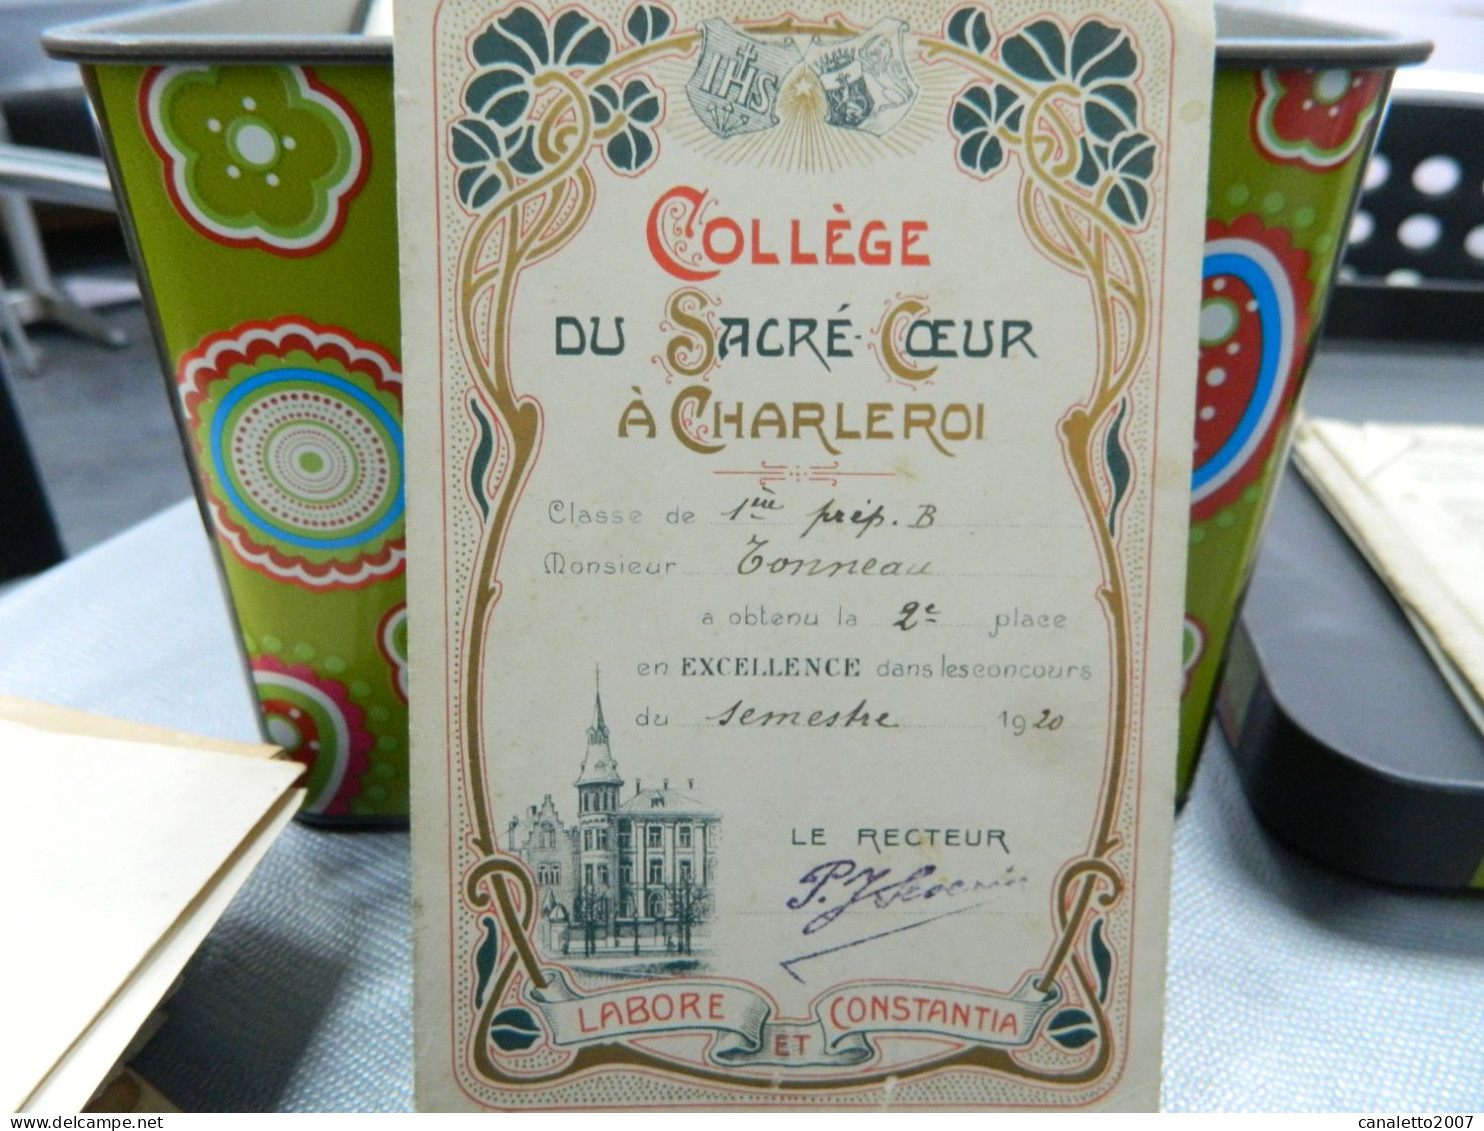 CHARLEROI: COLLEGE DU SACRE COEUR A CHARLEROI CARTE D'EXCELLENCE  DE M.TONNEAU EN 1920-DECOR ART NOUVEAU - Diplome Und Schulzeugnisse